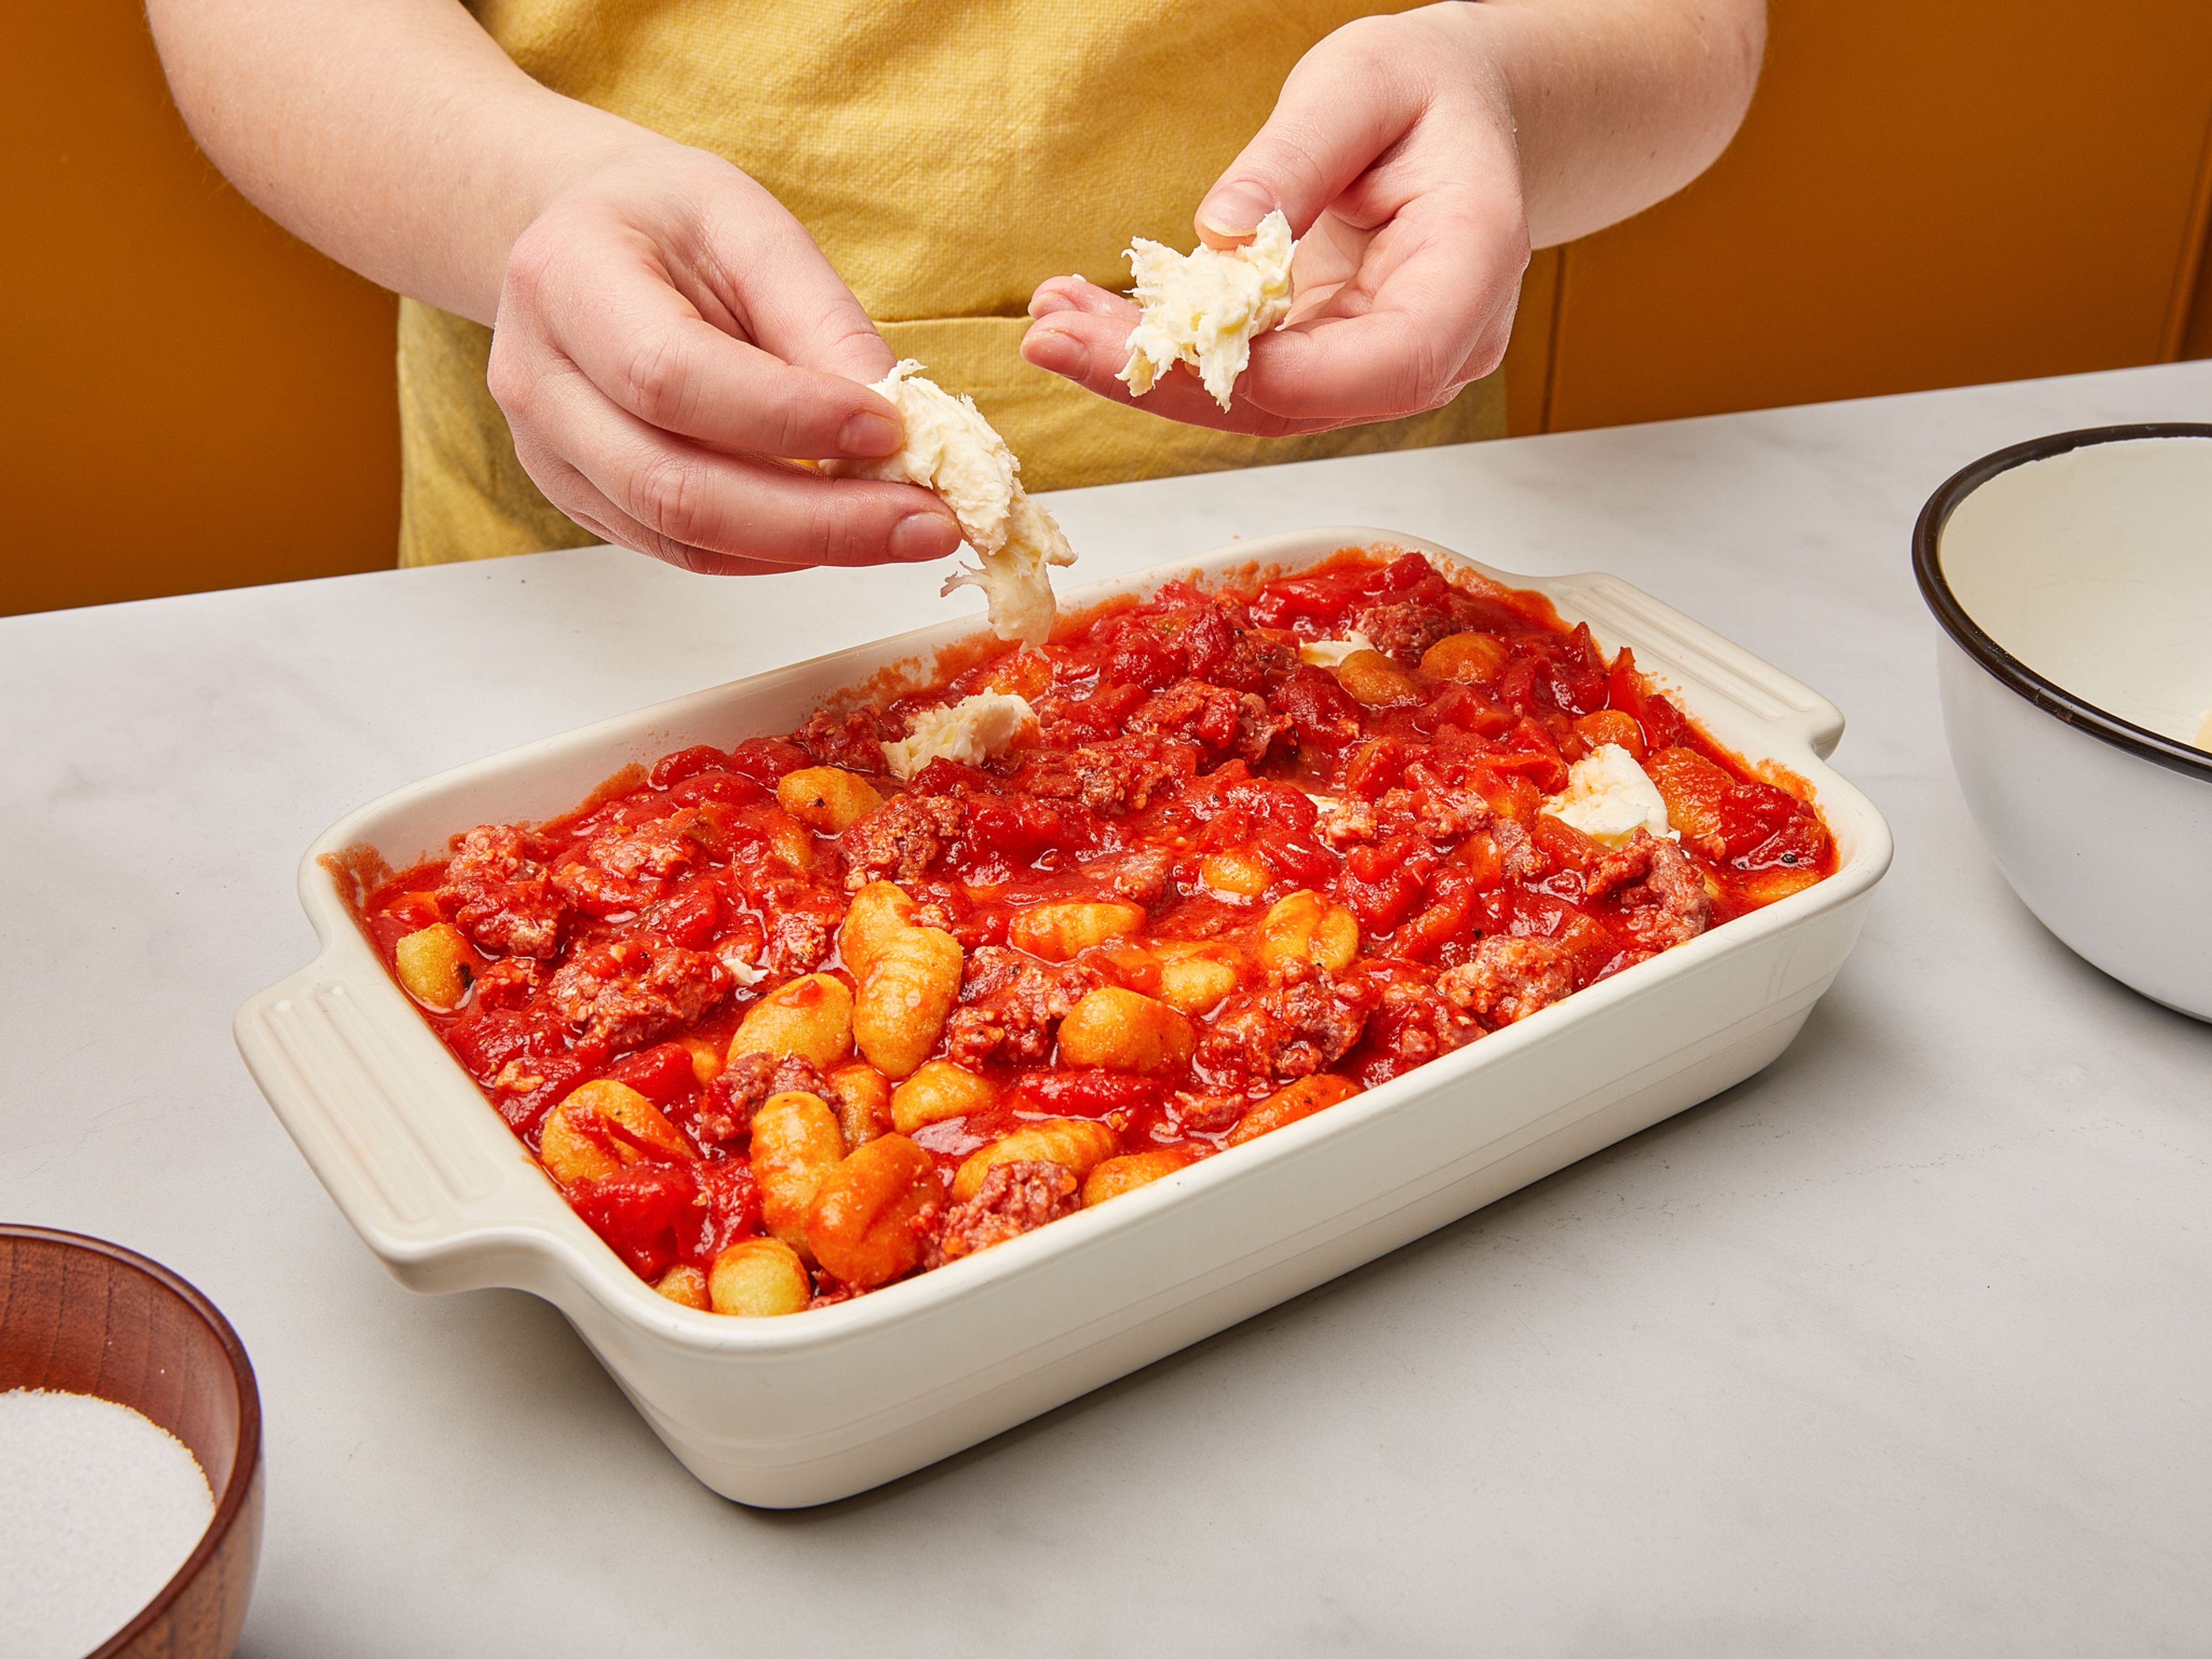 Die Soße zu den Gnocchi in die Auflaufform geben und gut miteinander vermengen. Den Mozzarella abtropfen lassen und zusammen mit dem Basilikum grob über die Gnocchi zupfen. Die Auflaufform in den Ofen schieben und bei 200°C ca. 20 Min. backen. Aus dem Ofen nehmen und sofort servieren. Guten Appetit!